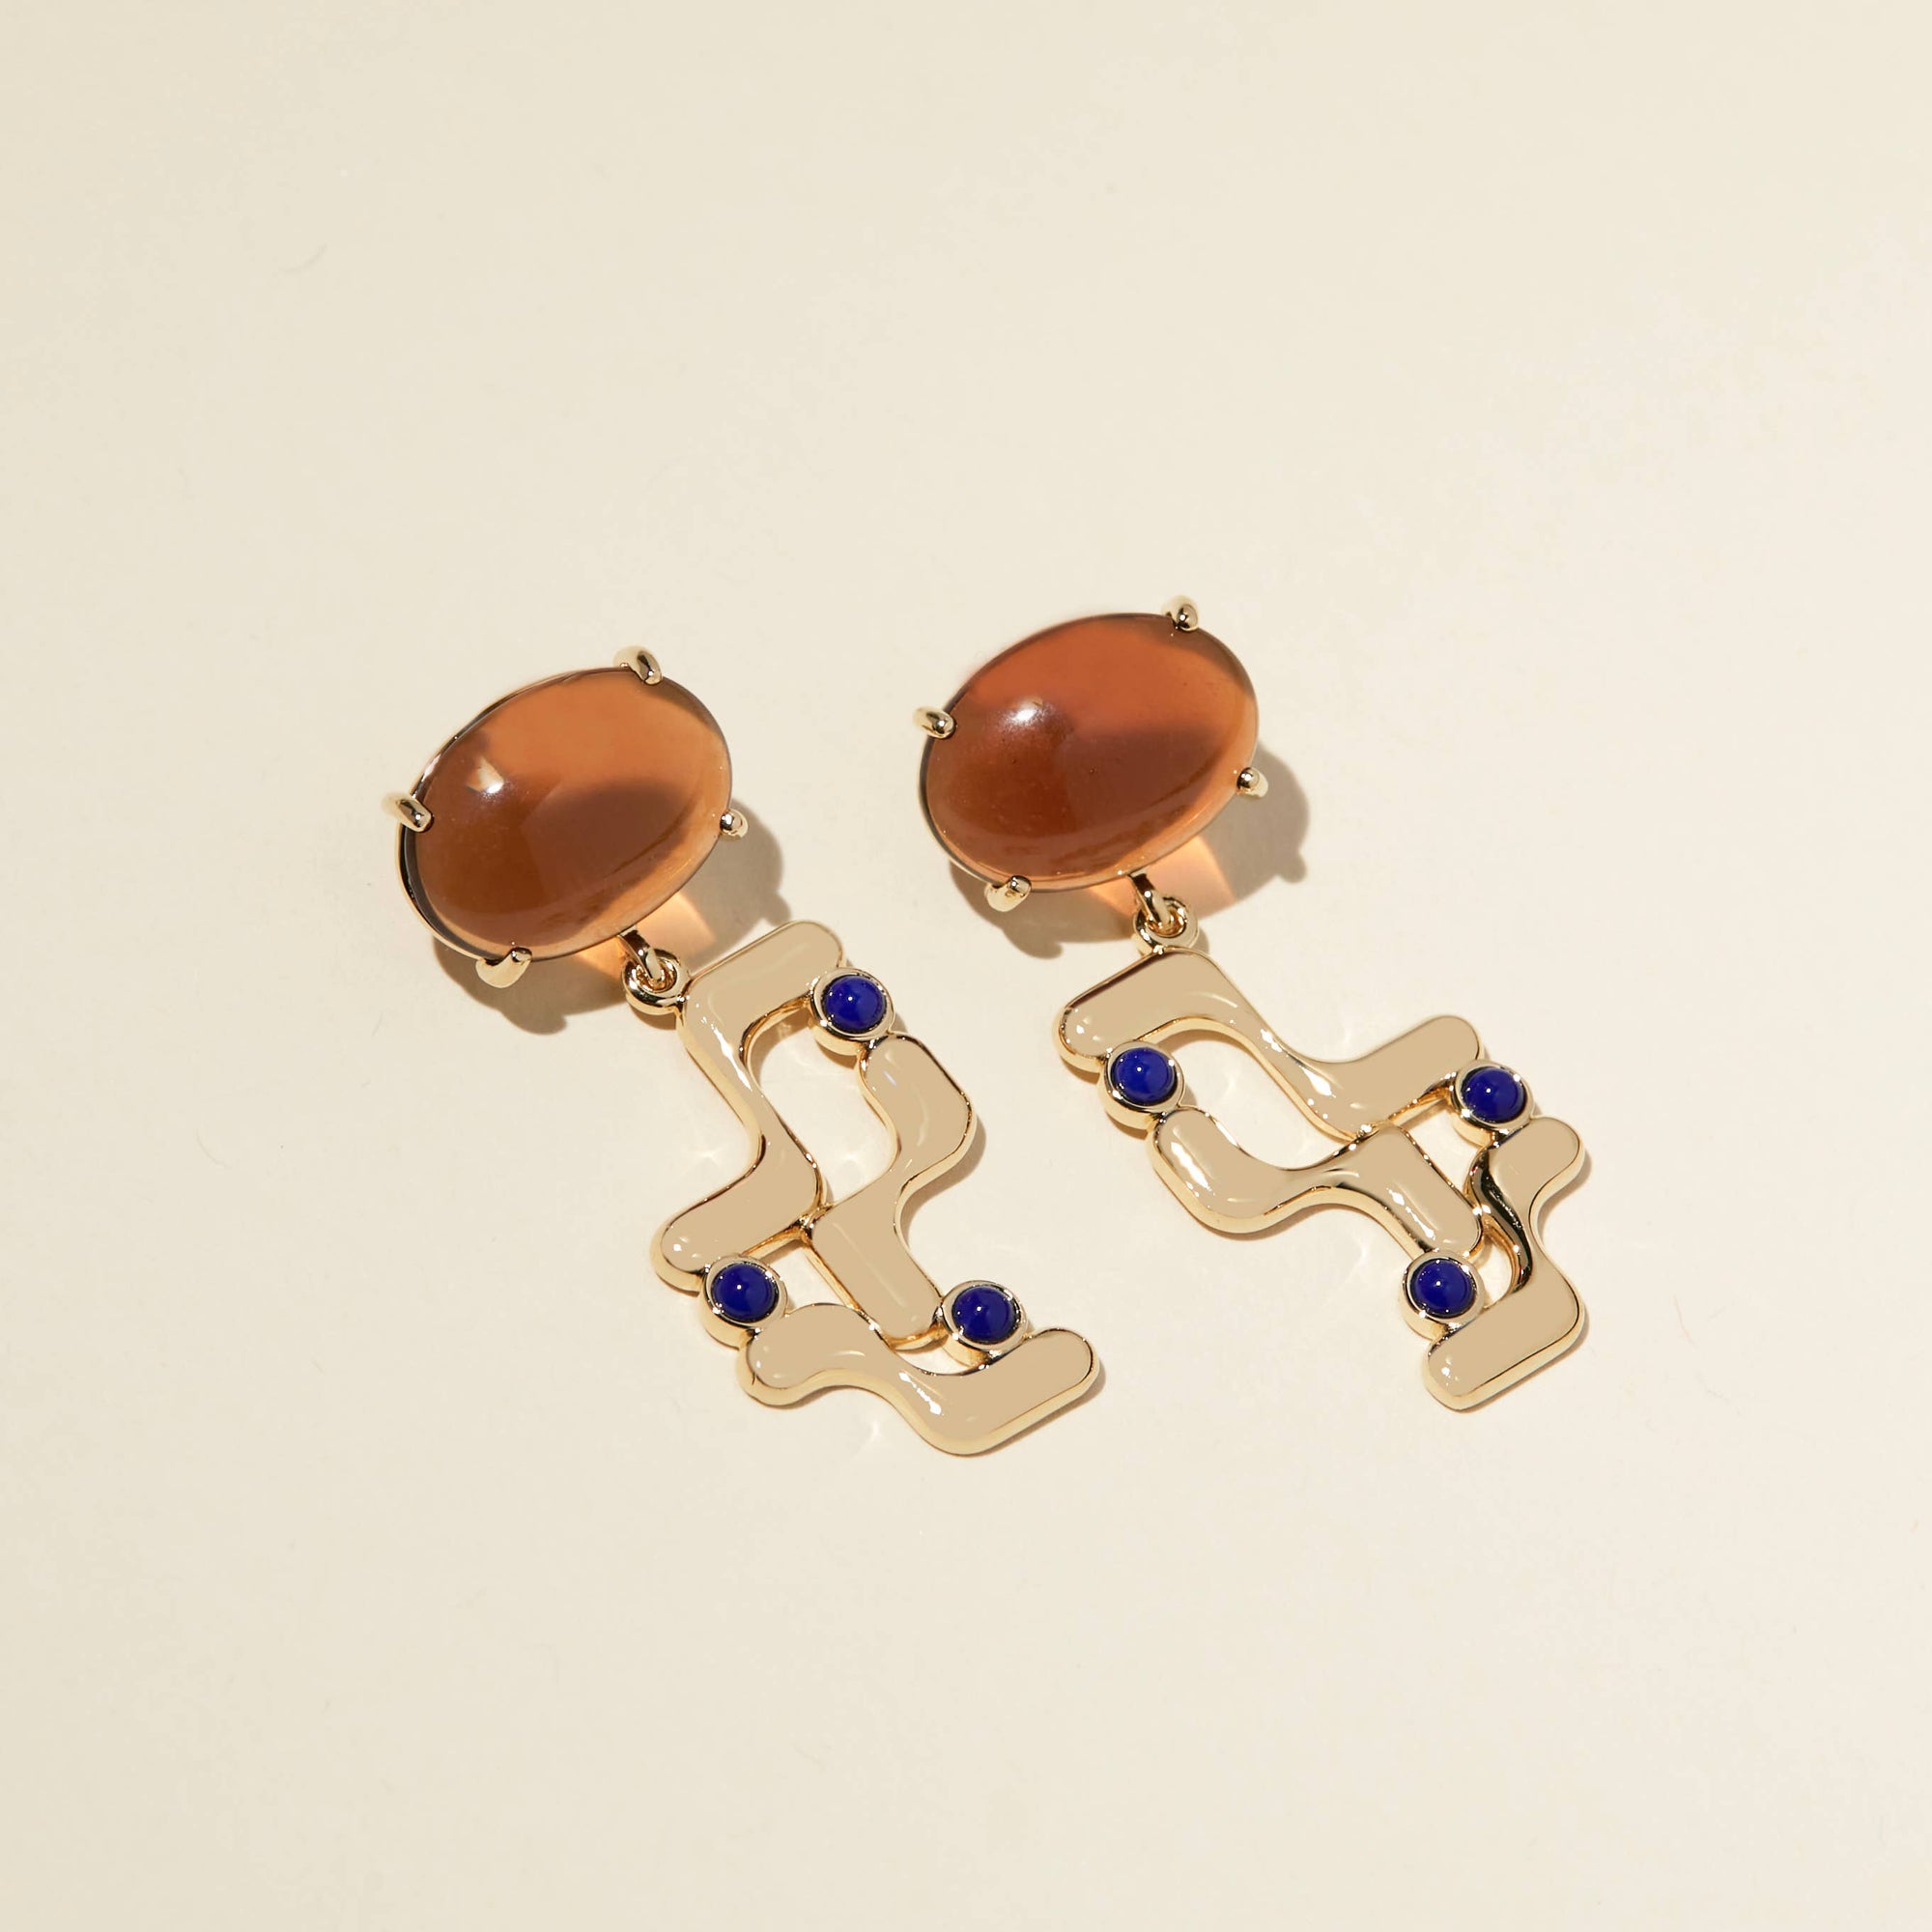 halsted earrings - brown